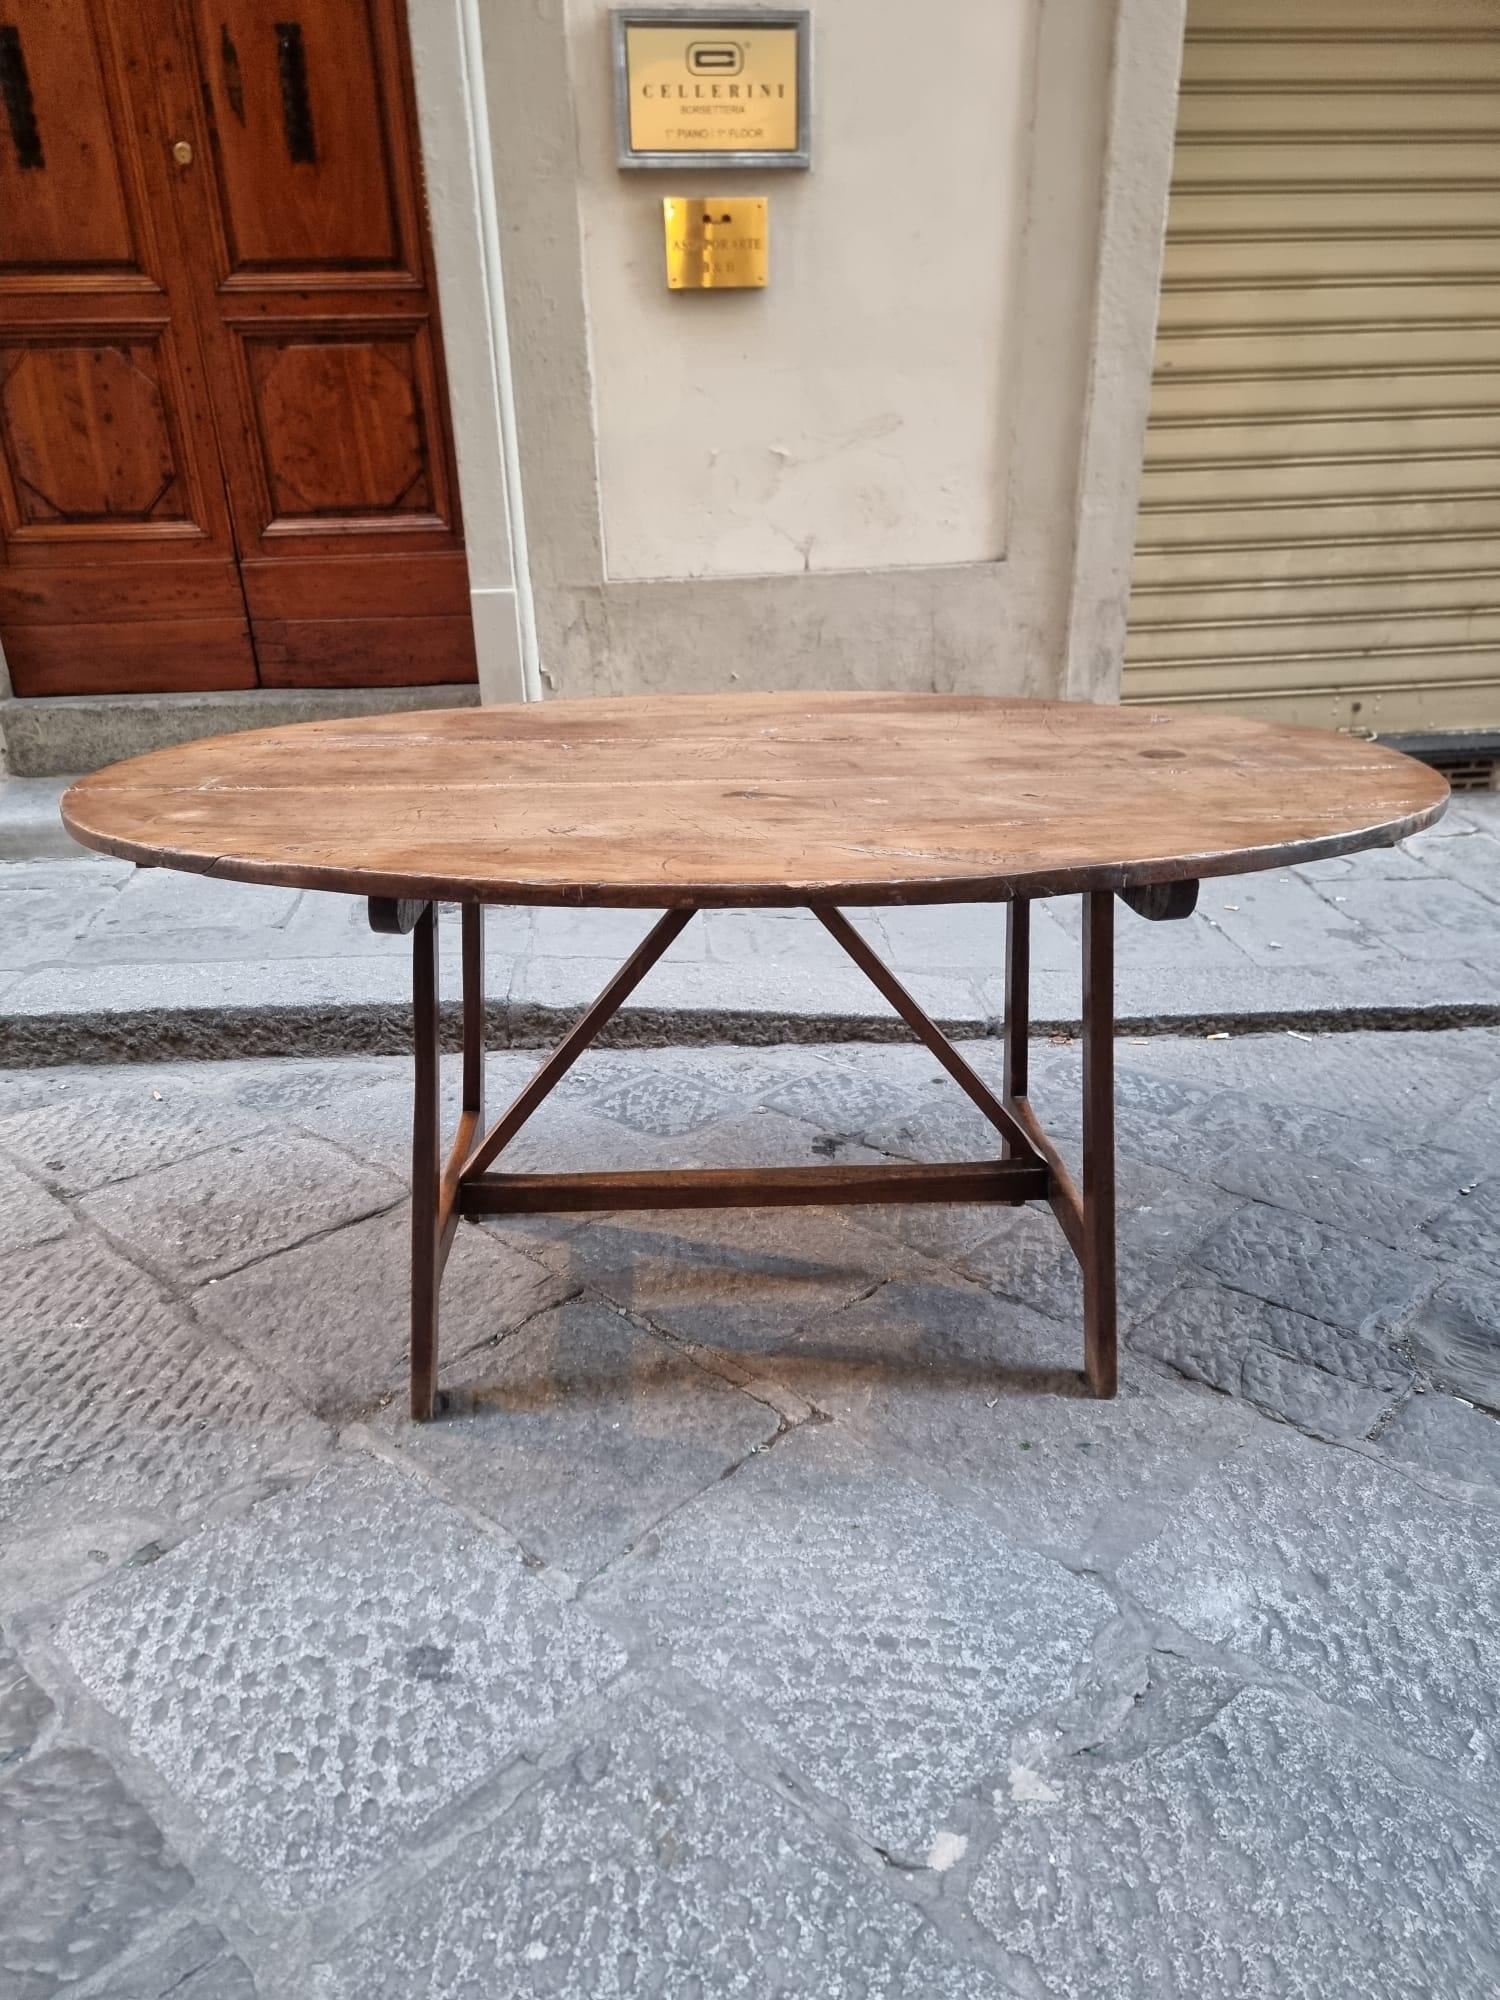 Ovaler Tisch in Form von Ziegenbeinen, aus Nussbaumholz, 18. Mittelitalien, Toskana.

Die Verlängerungen und Bügeleisen sind nicht original.

Der Tisch benötigt eine Restaurierung, die wir durch unsere professionellen Restauratoren durchführen